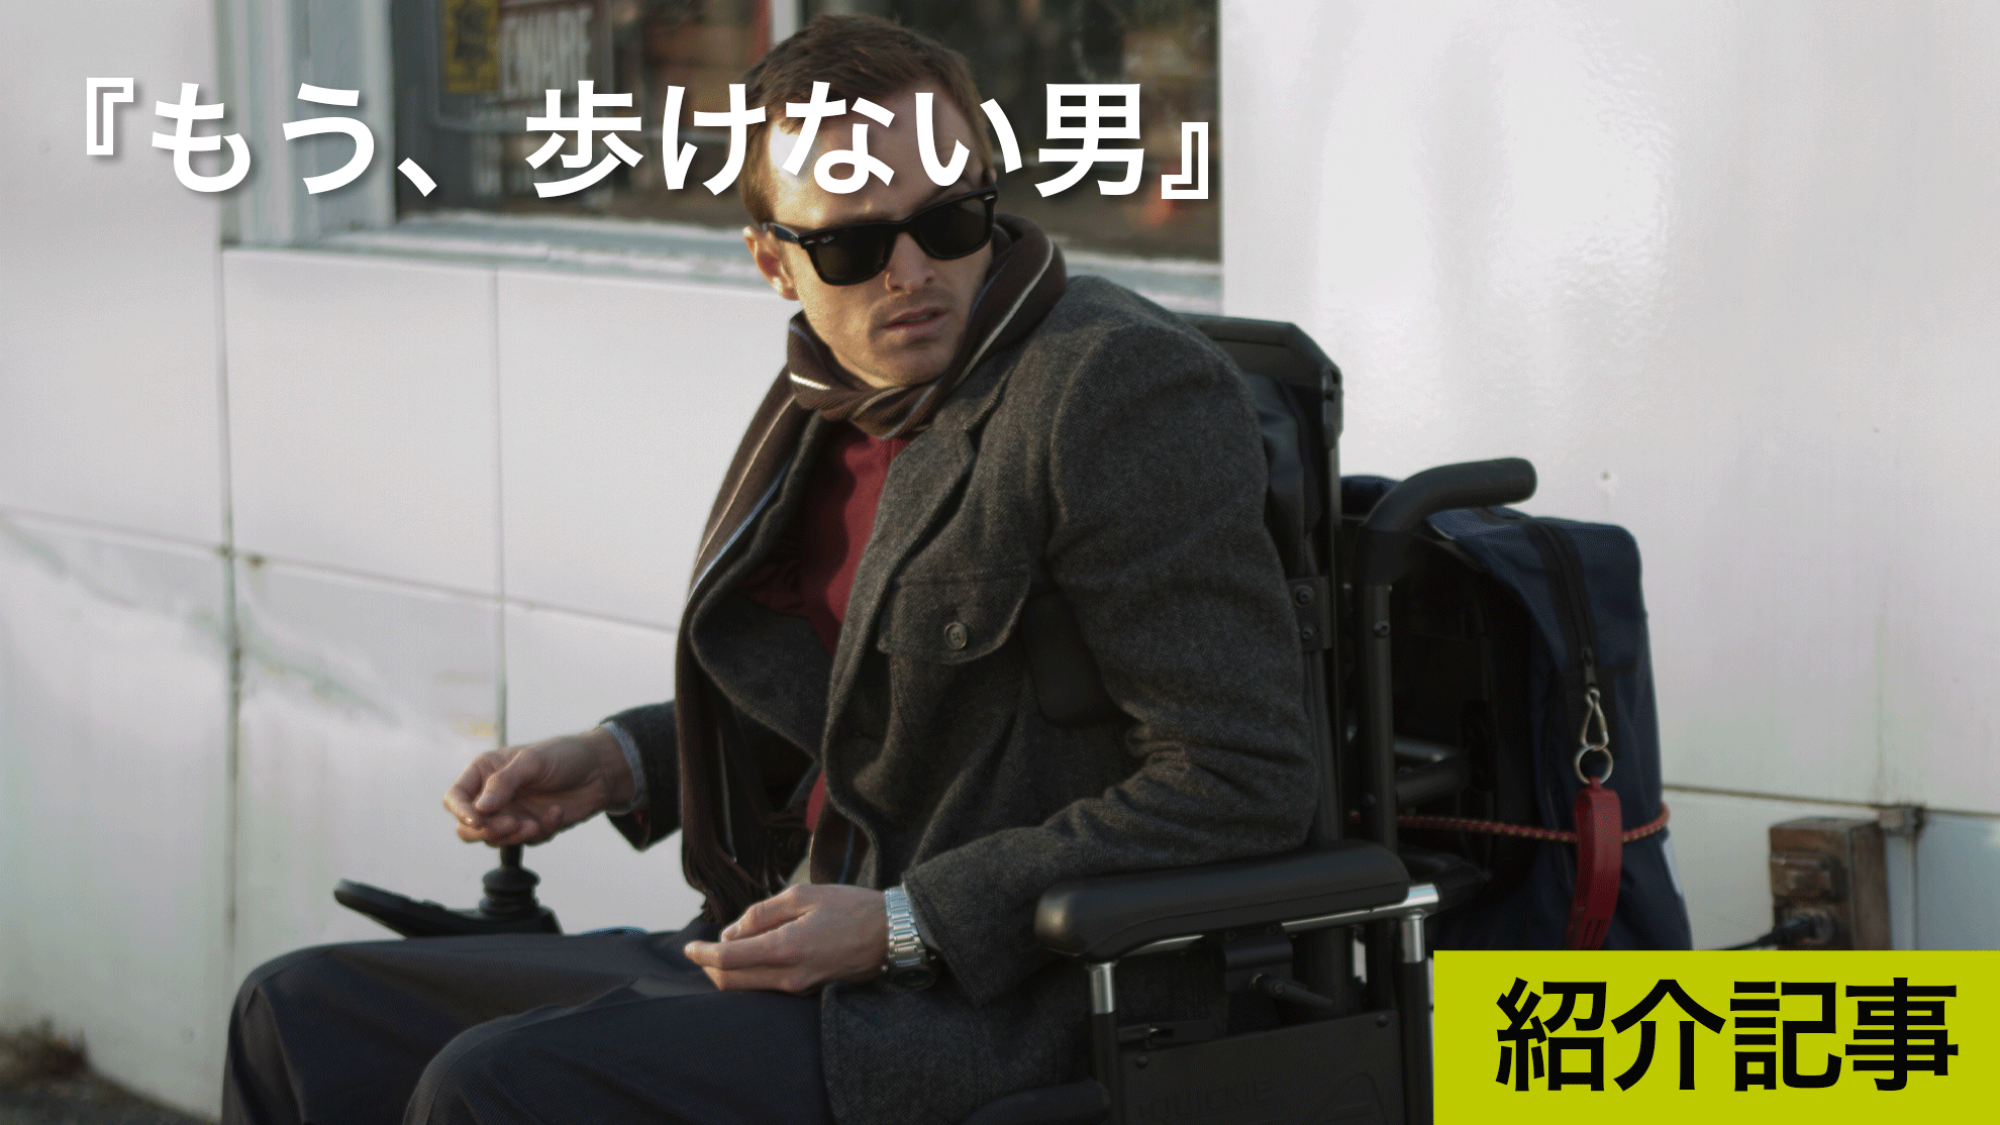 『もう、歩けない男』四肢麻痺になった男が再び人生を歩み始めるまでの姿を描いた『ブレイキング・バッド』アーロン・ポール主演の実話